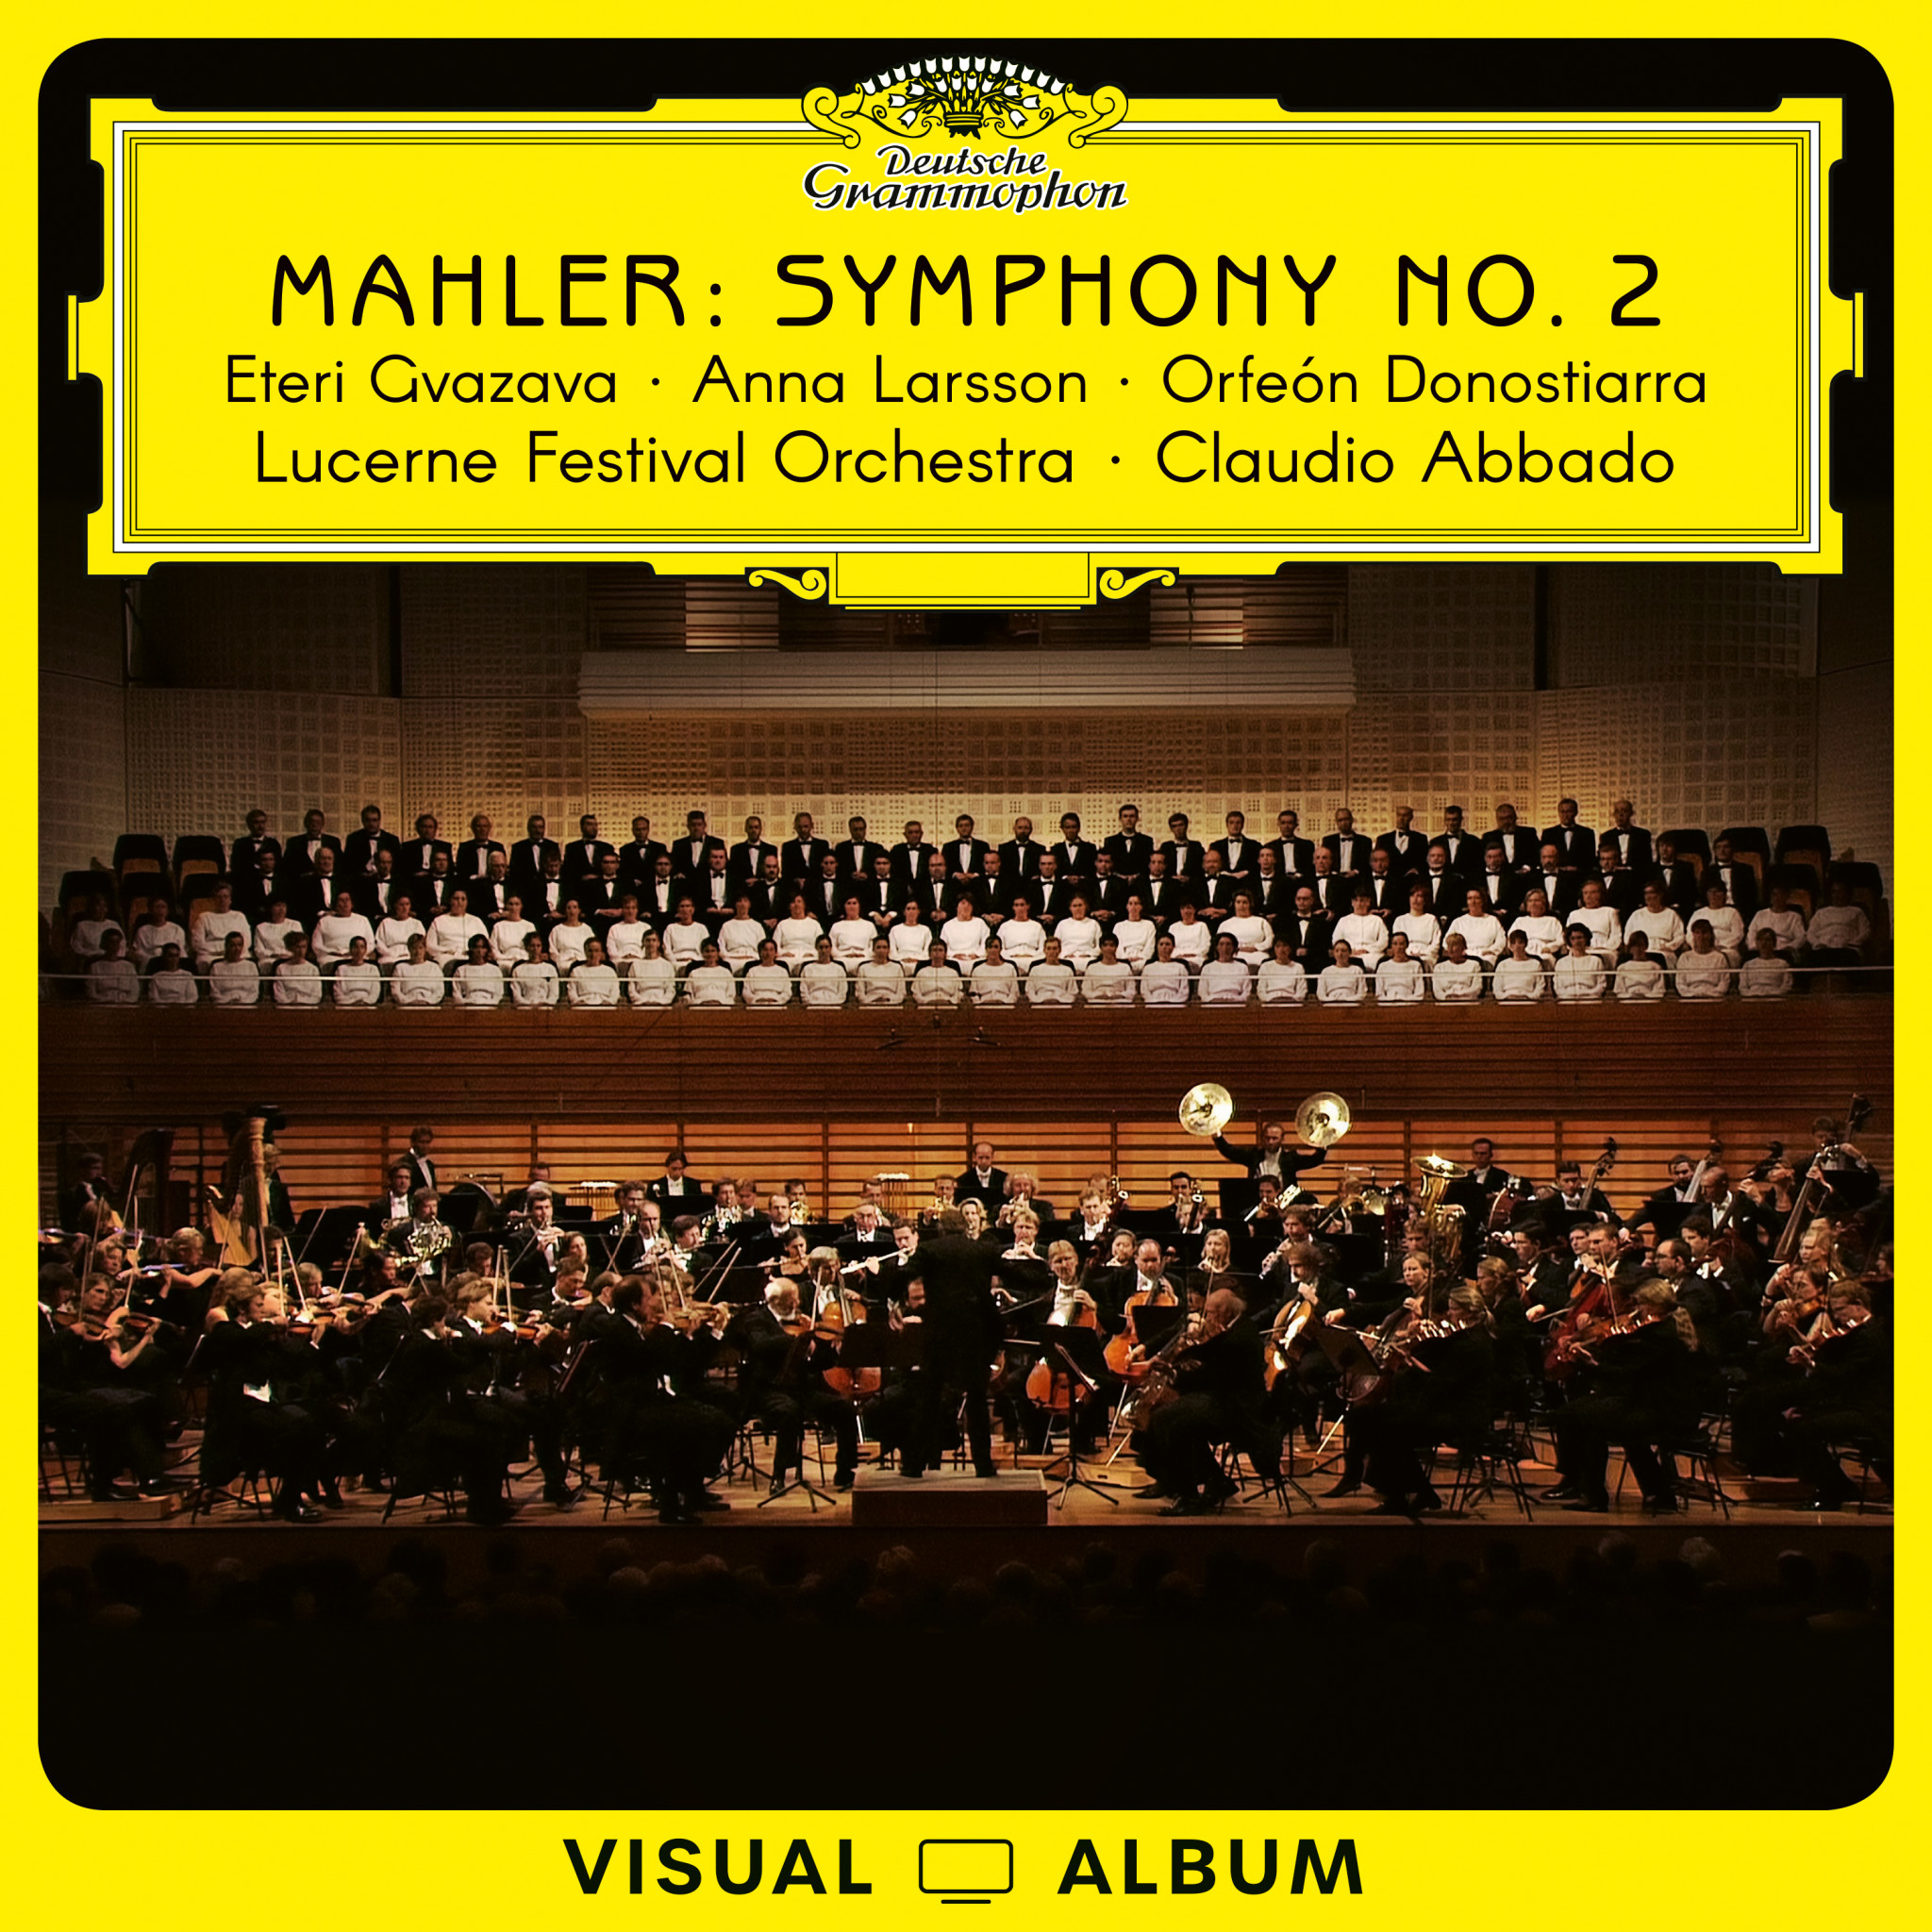 Abbado - Mahler Symphony No. 2 (Visual Album) Cover